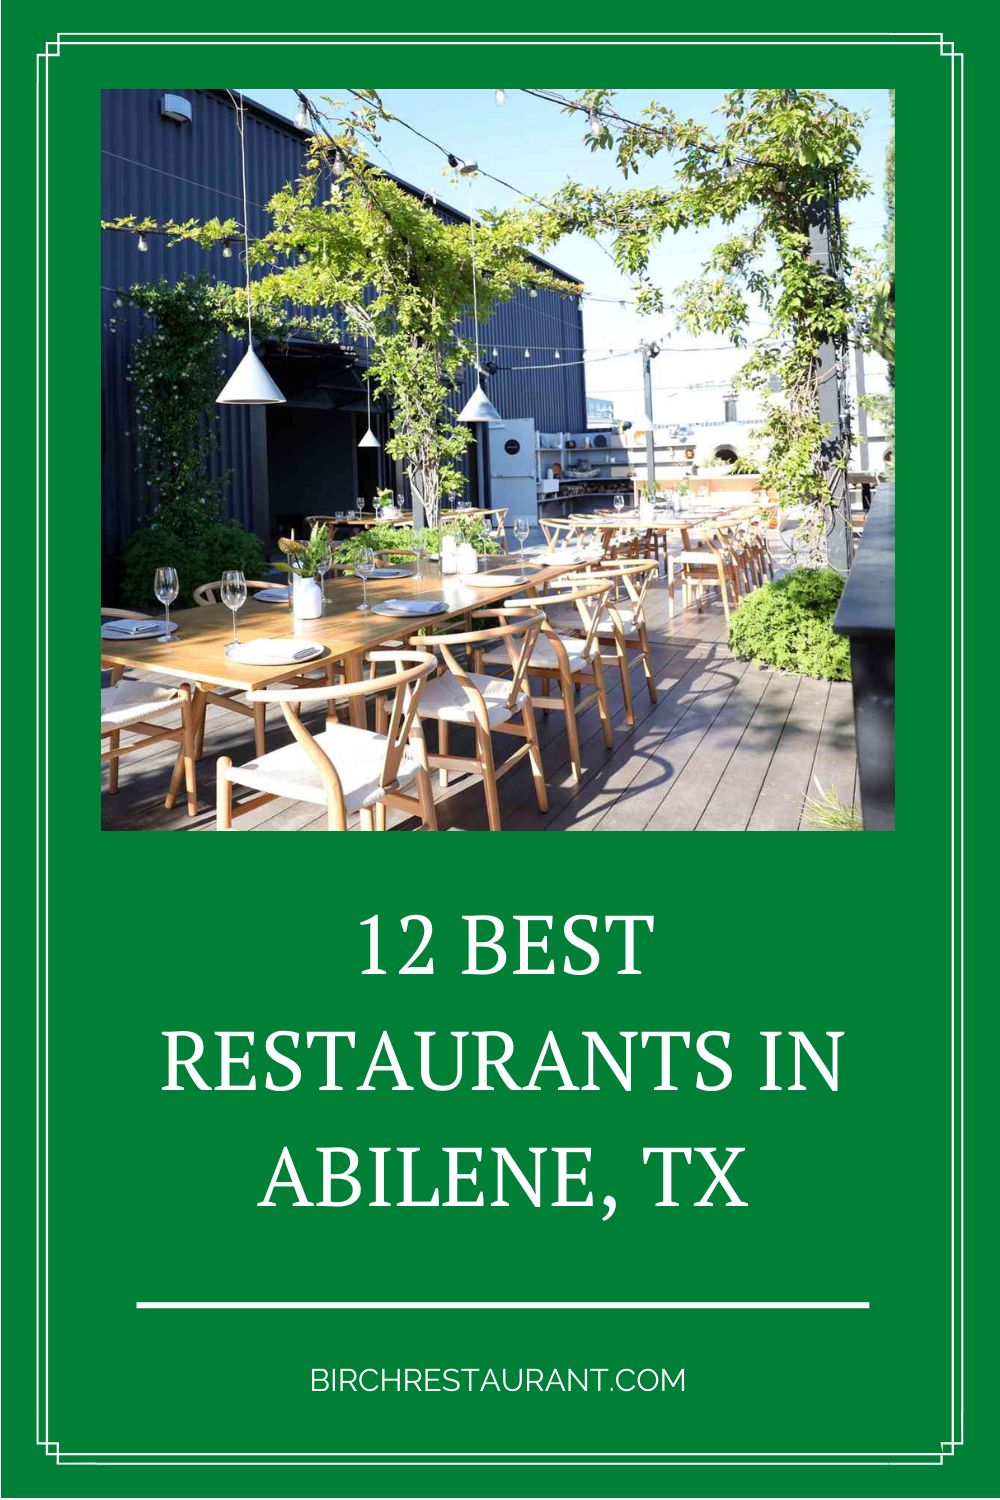 Best Restaurants in Abilene